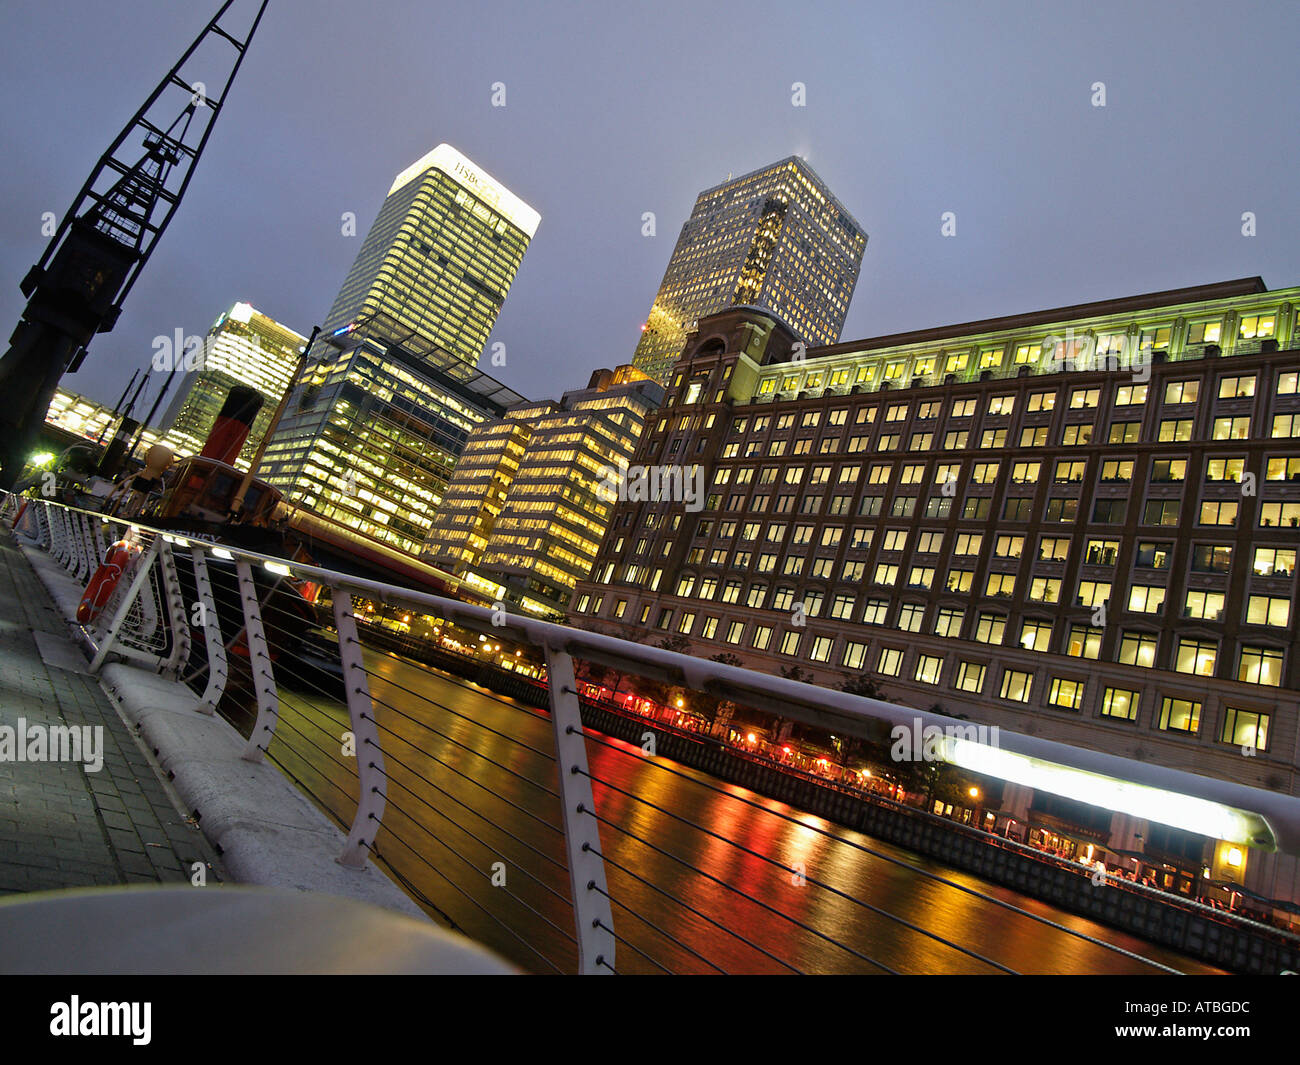 Les immeubles de bureaux et de réflexions sur l'eau quai Canary Wharf Docklands Londres la nuit Banque D'Images